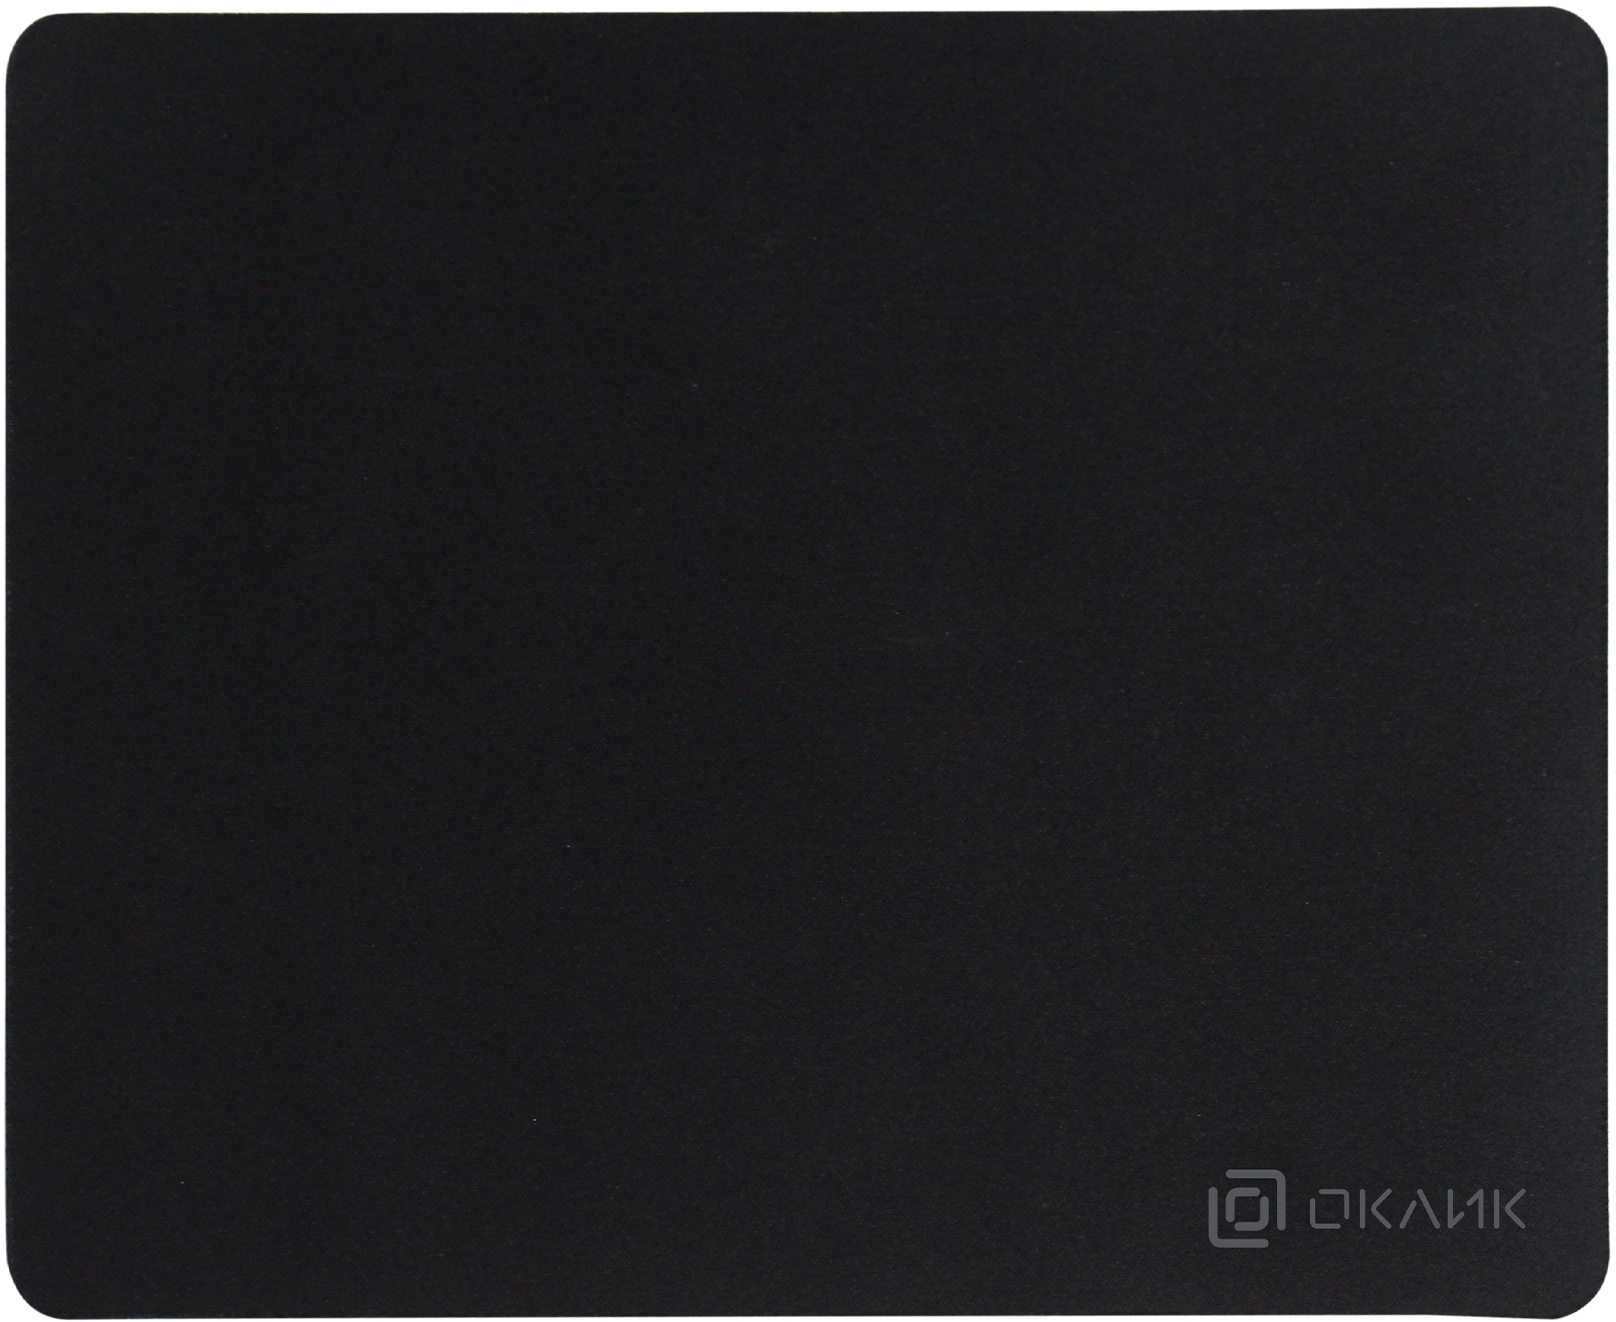 Коврик для мыши Oklick OK-T280, 280x225x2мм, черный (OK-T280)